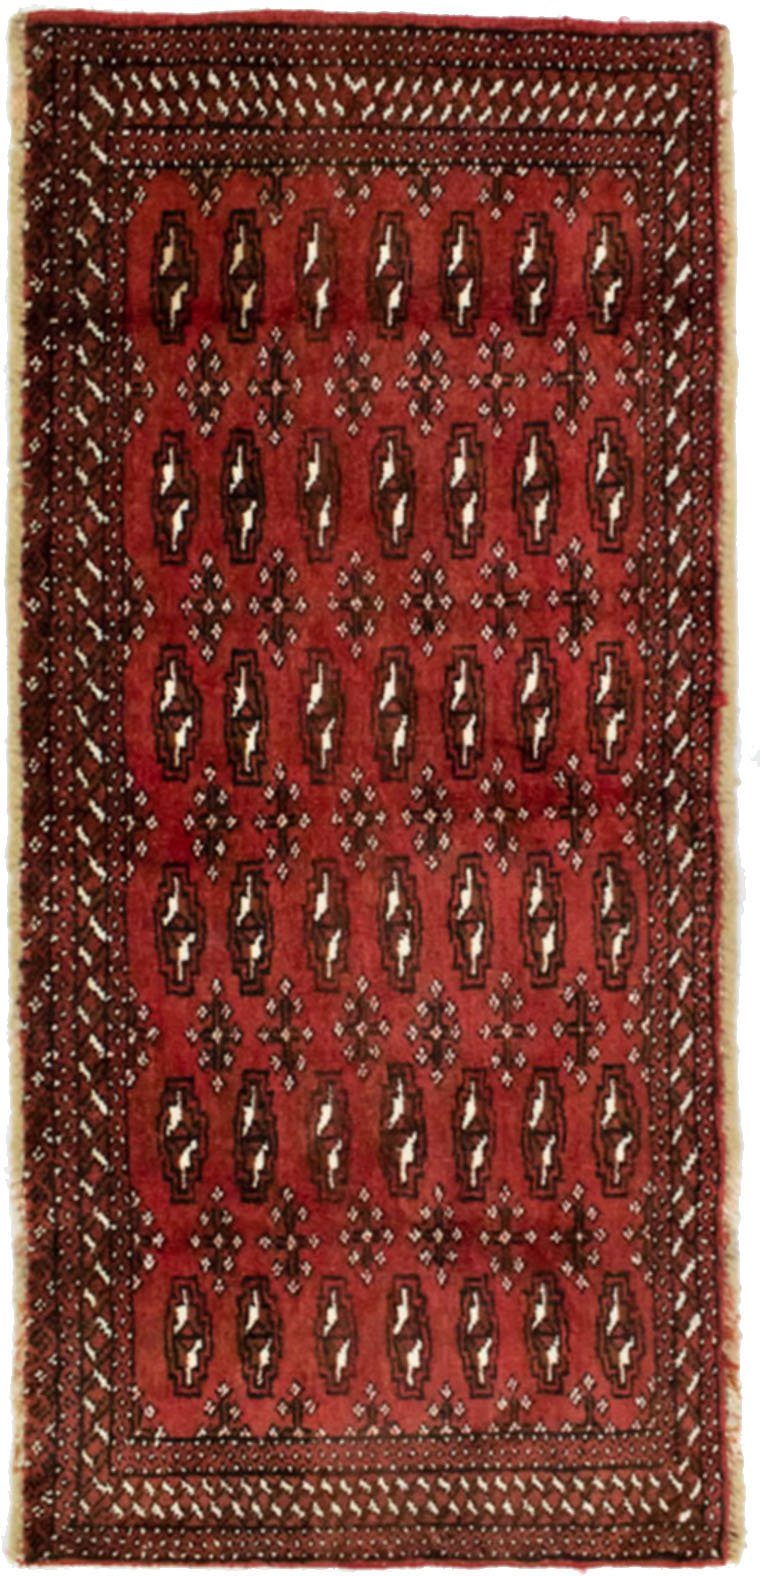 morgenland wollen kleed turkaman vloerkleed met de hand geknoopt rood rood